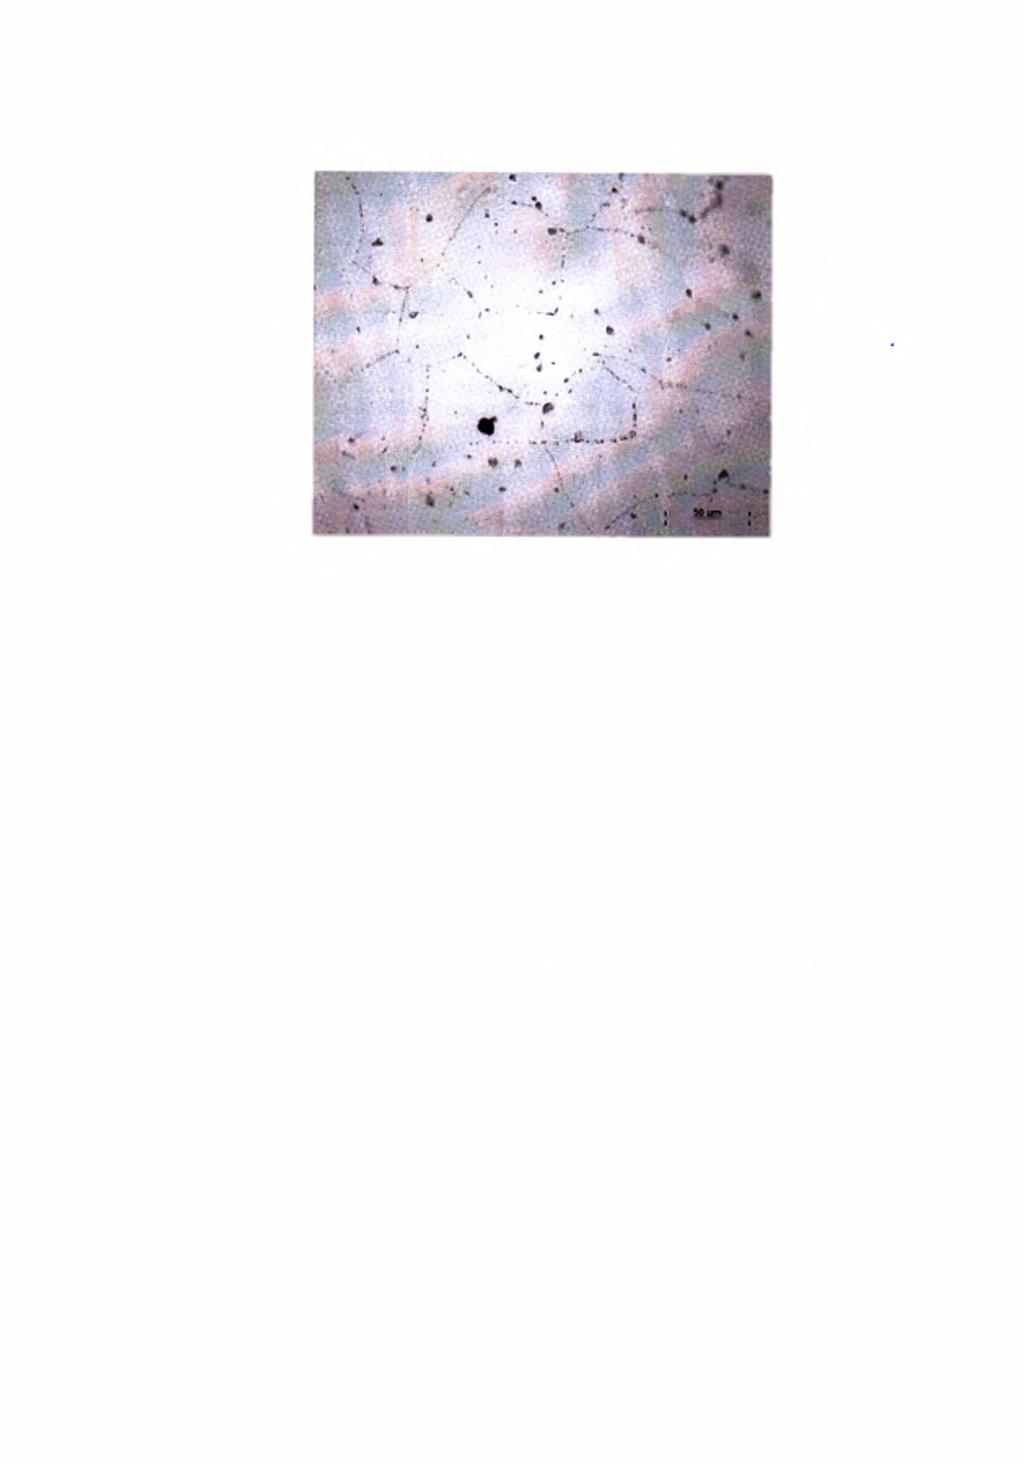 Κεφάλαιο 2; Βιβλιογραφική ανασκόπηση Εικόνα 2.6: Δομή κράματος αλουμινίου (Al-Mg-Si) που περιέχει σωματίδια δεύτερης φάσης, όπως αυτή φαίνεται στο οπτικό μικροσκόπιο. 2.3.